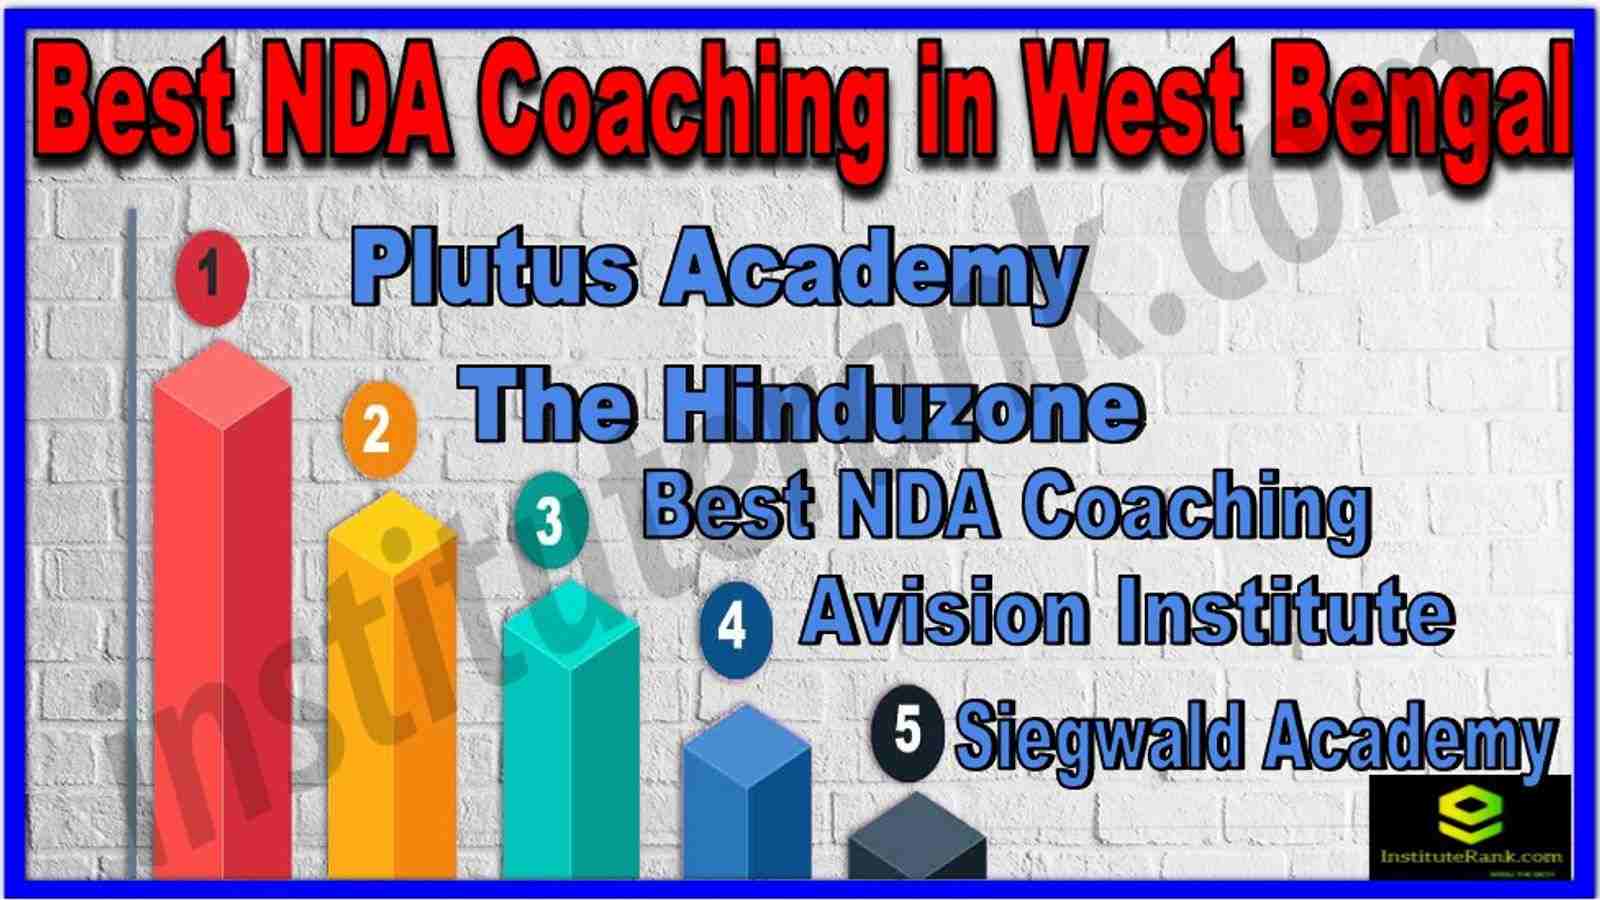 Best NDA Coaching in West Bengal